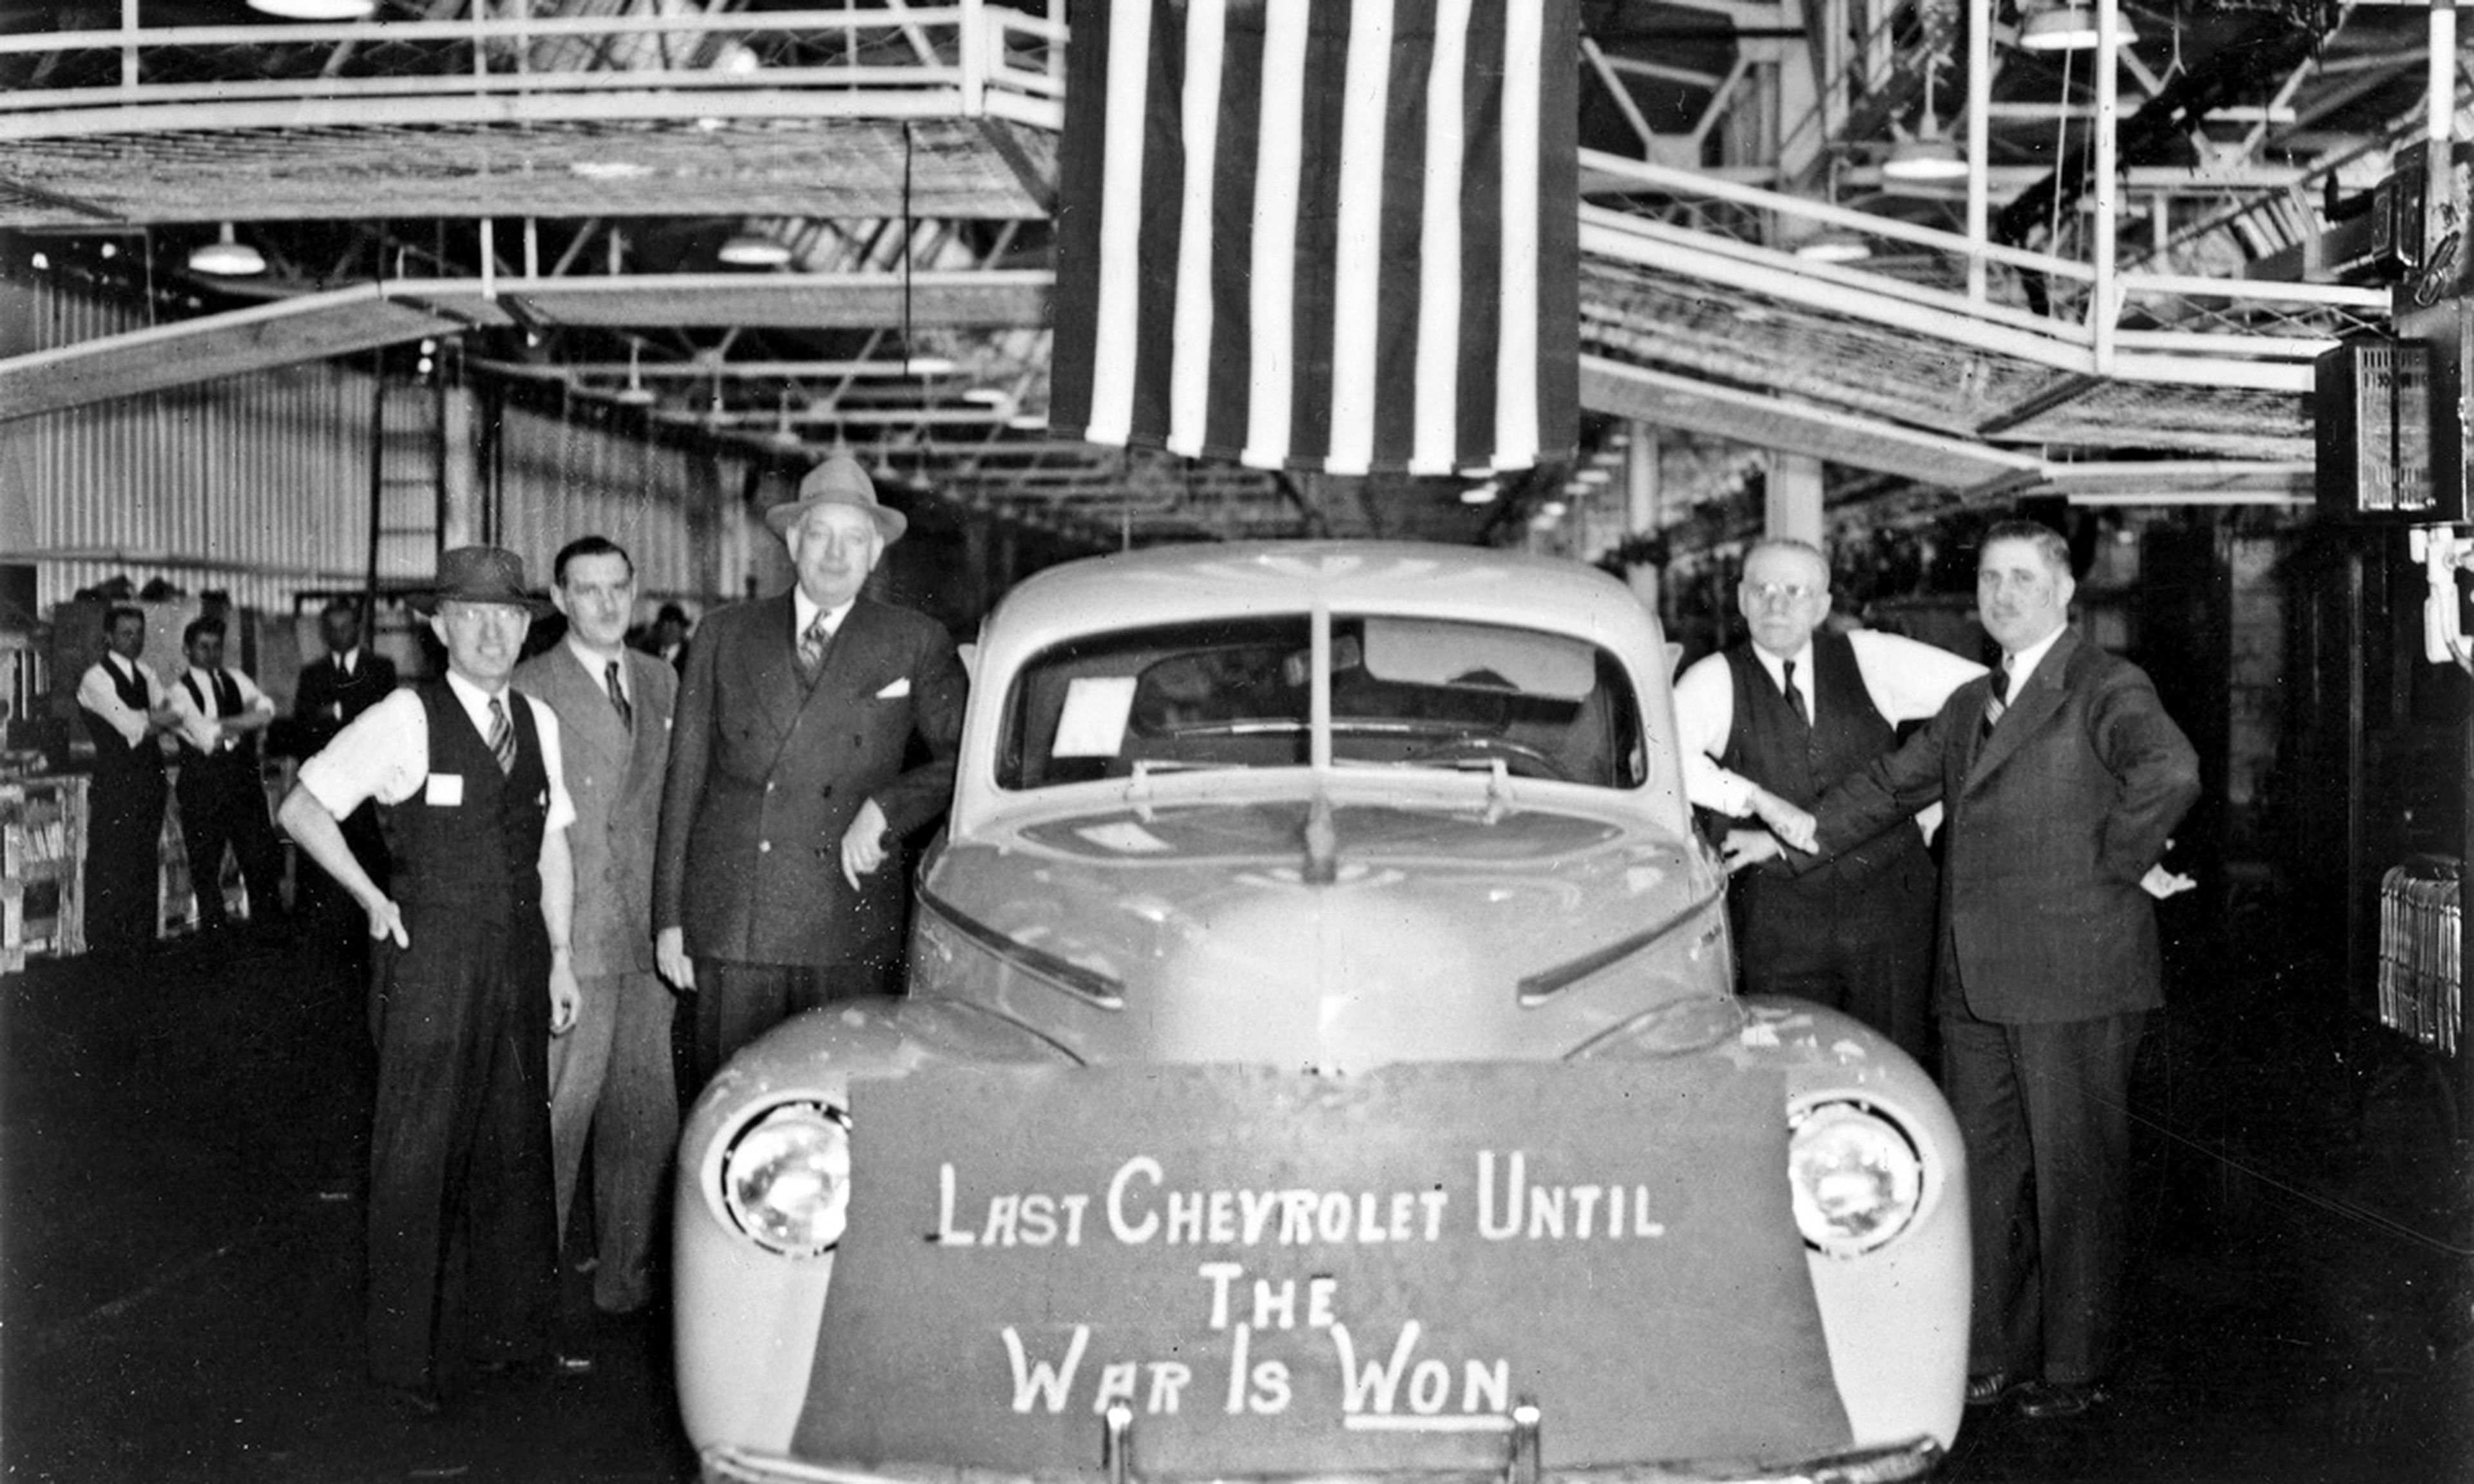 El último Chevrolet que se fabricó en 1942, antes de iniciar el esfuerzo bélico.